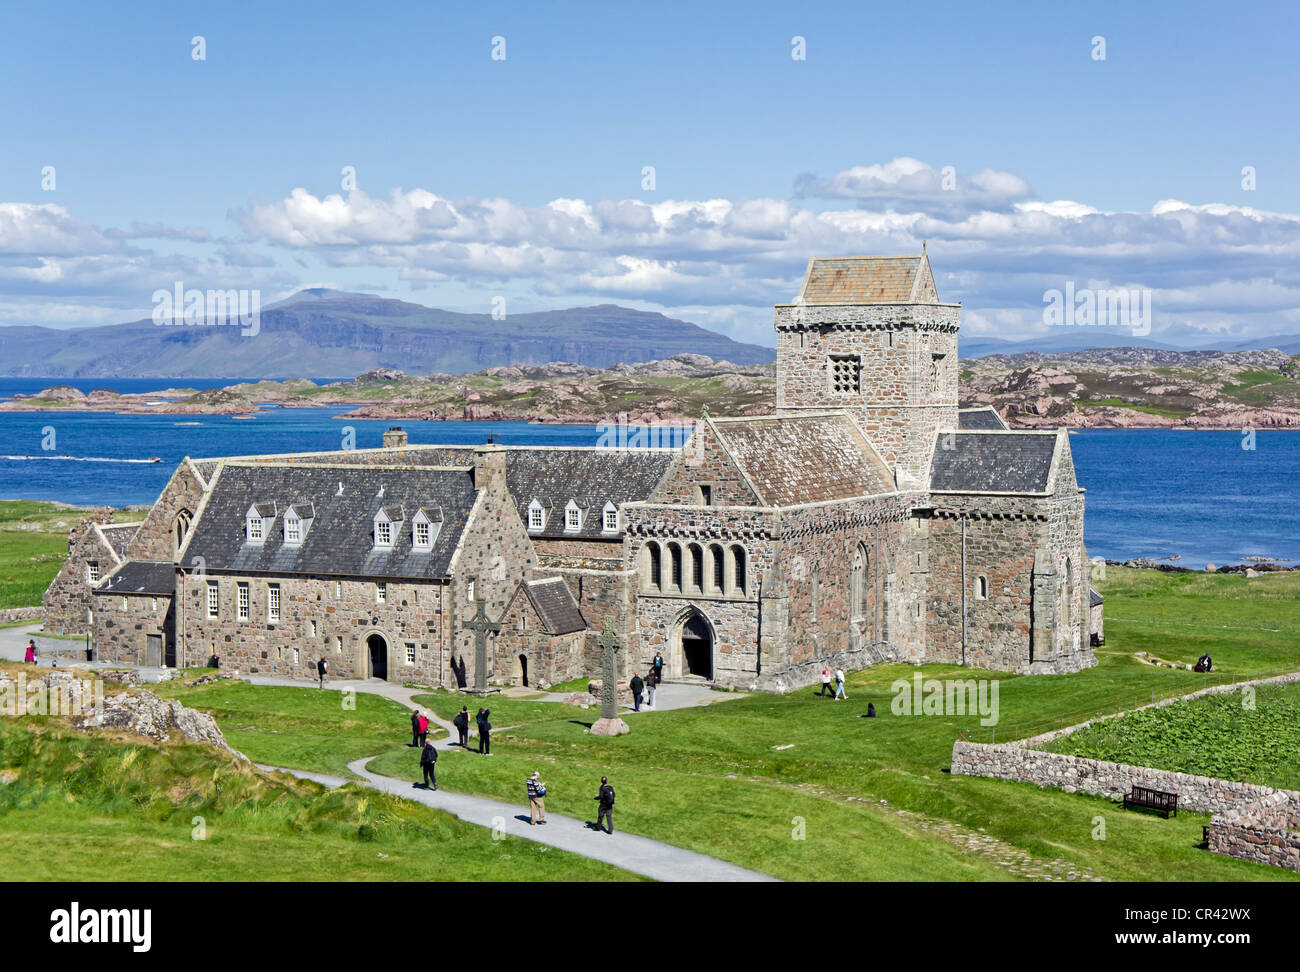 Historic Scotland di proprietà e mantenuto Iona Abbey a Baile Mor sulla costa est dell'isola di Iona off Mull in Scozia occidentale Foto Stock